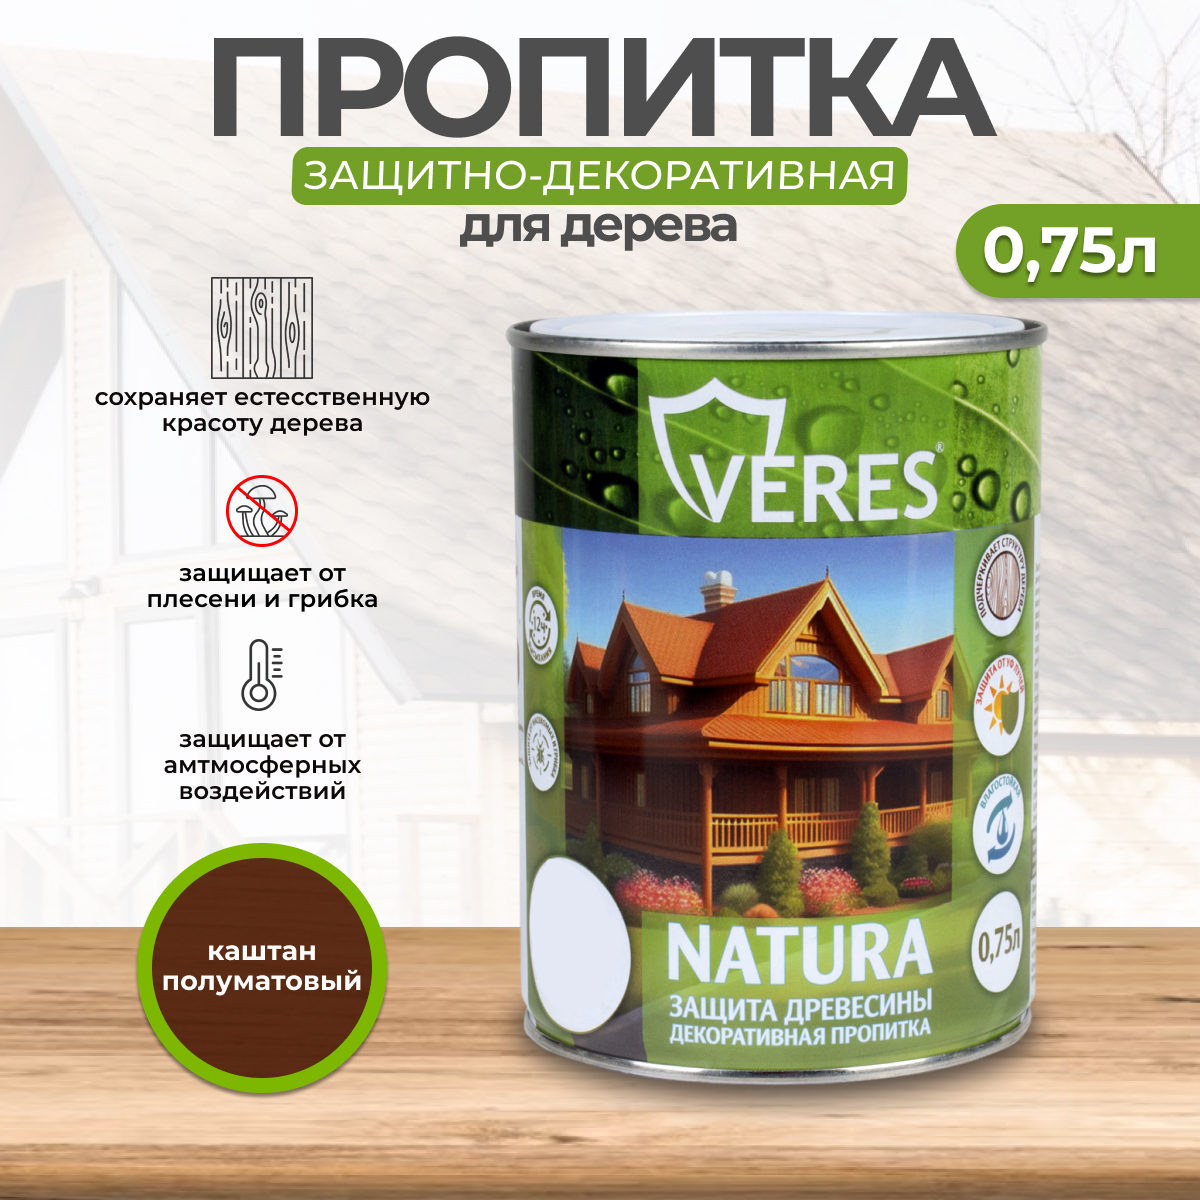 Декоративная пропитка для дерева Veres Natura полуматовая 0 75 л каштан, VR-137